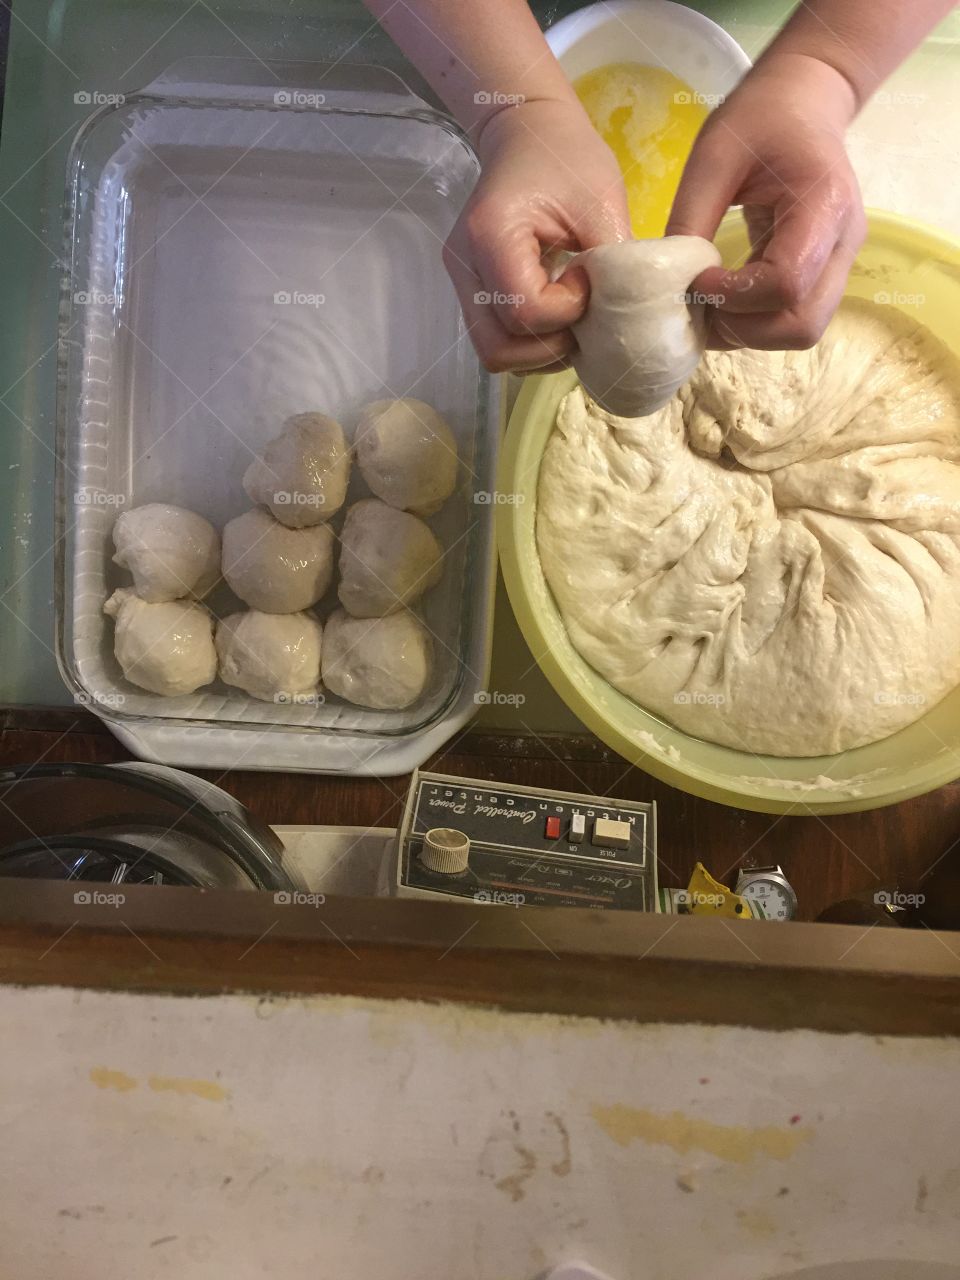 Making homemade yeast rolls